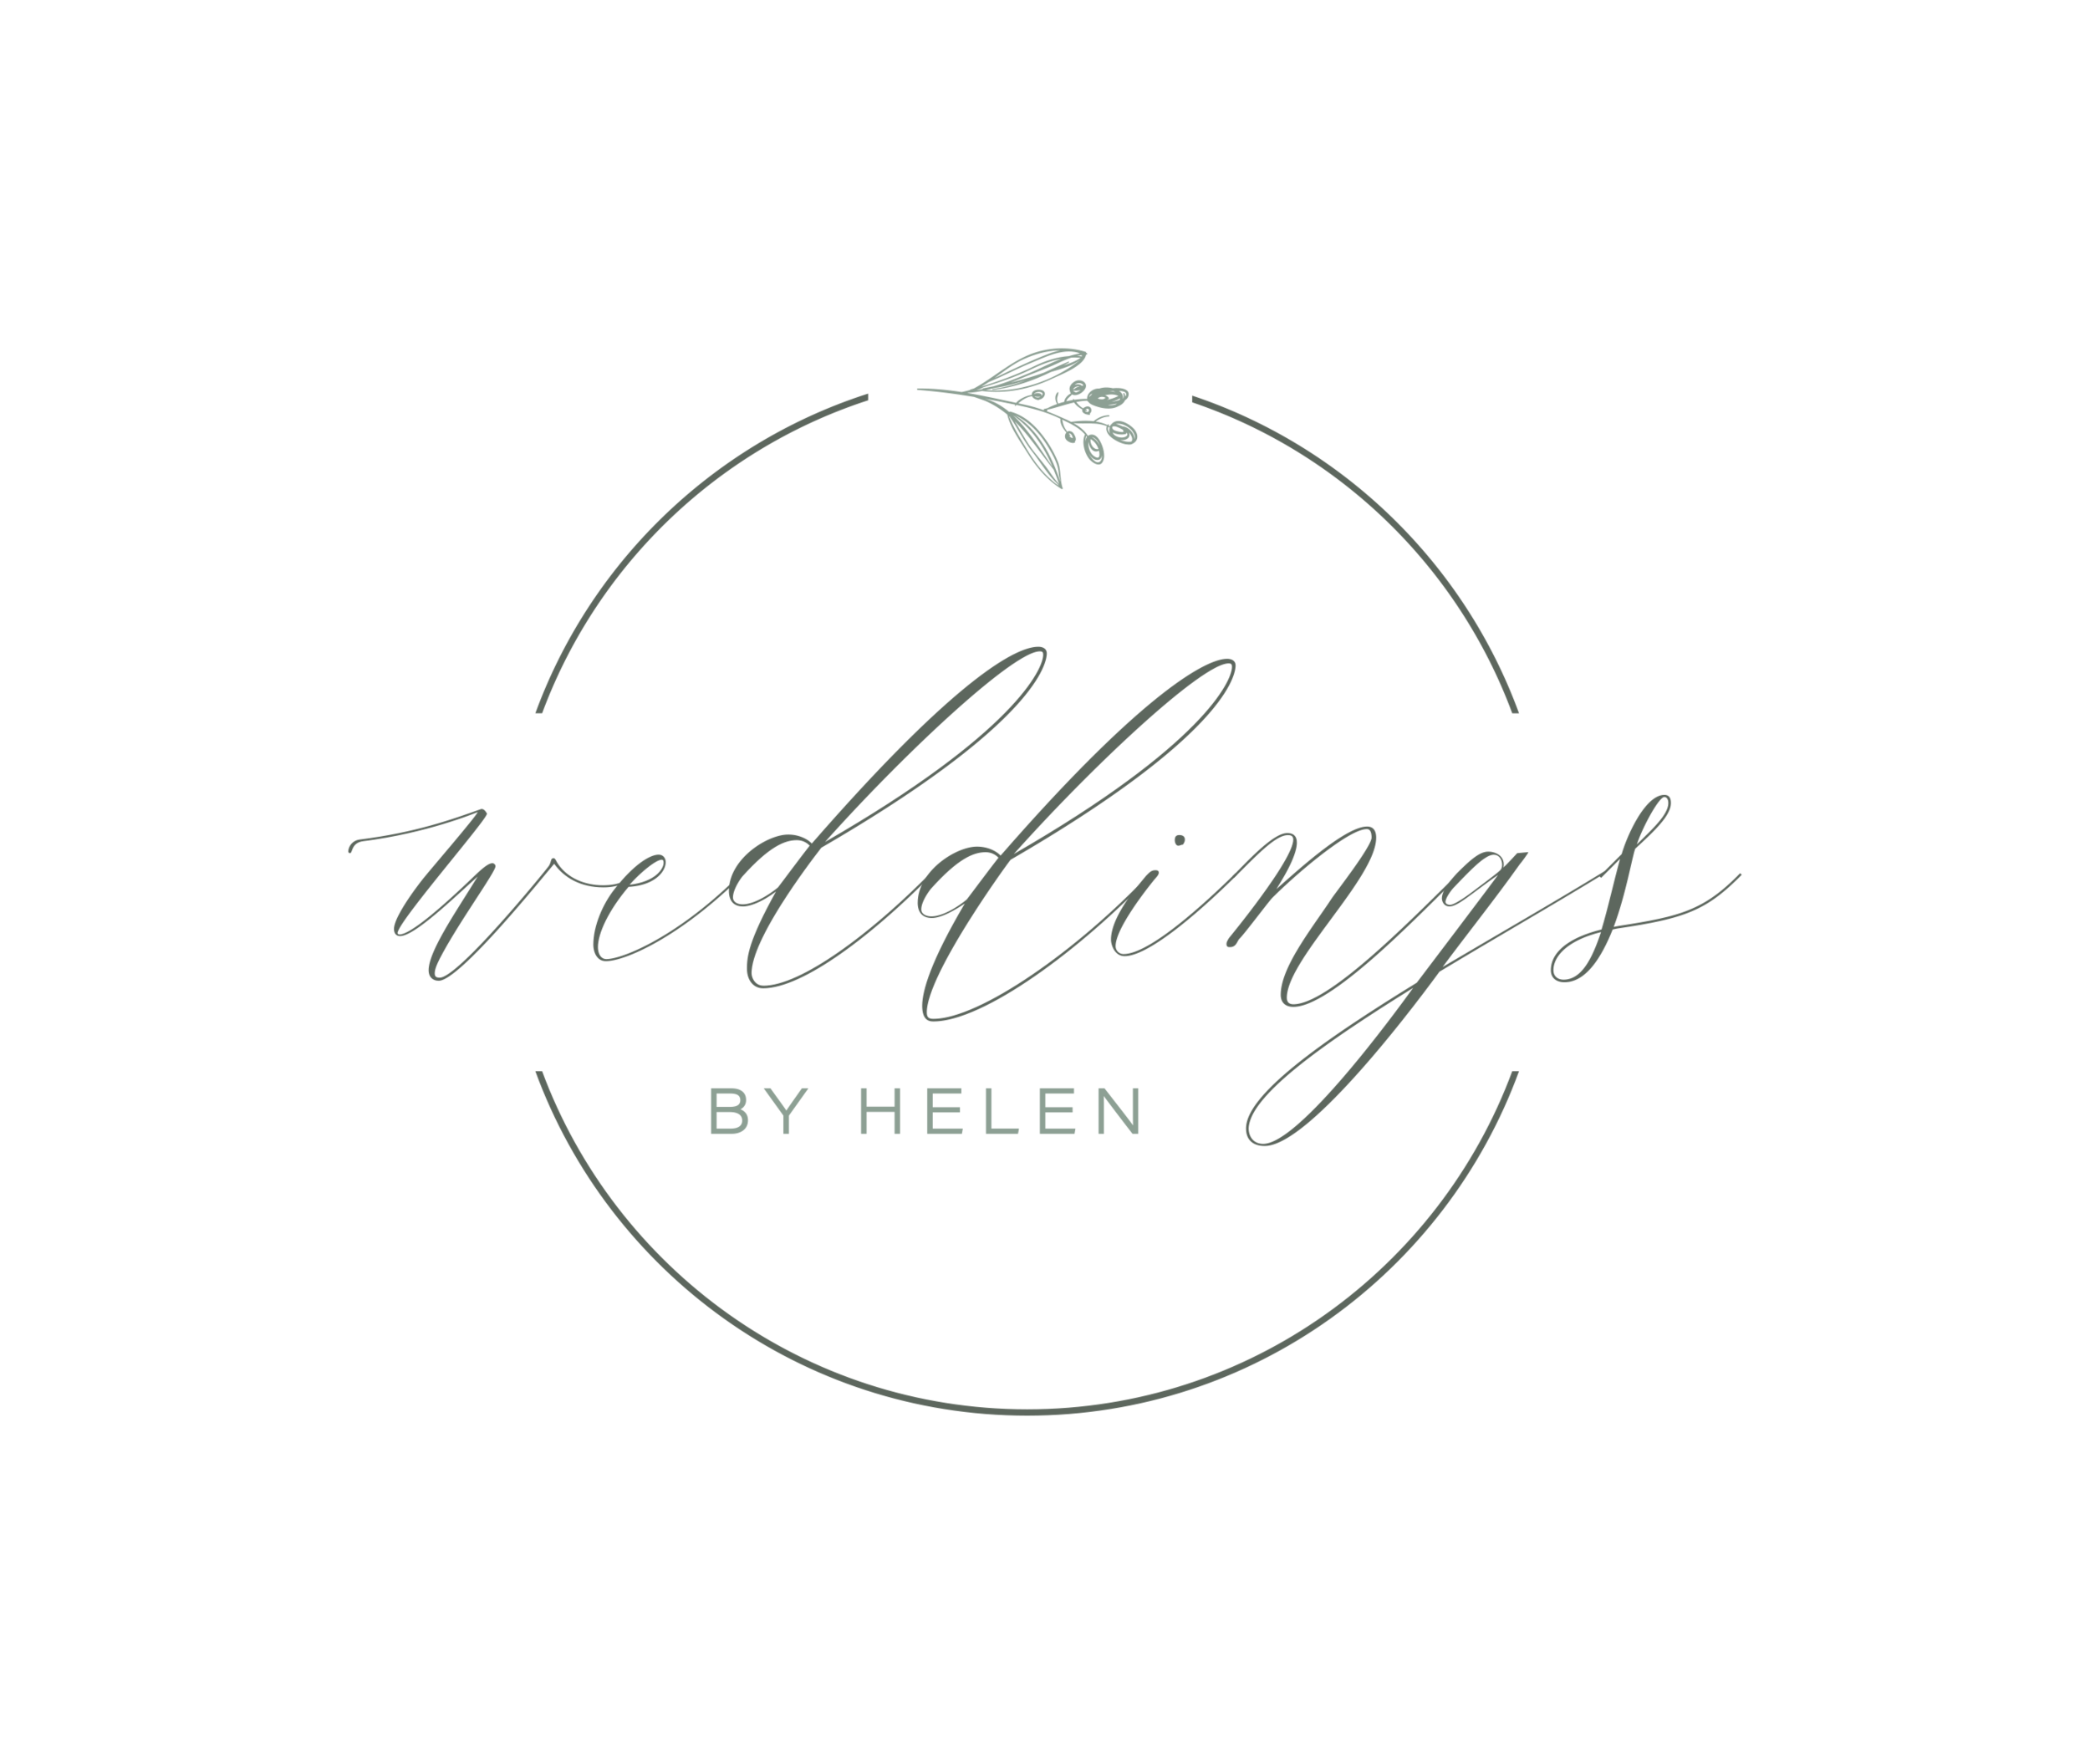 Weddings by Helen